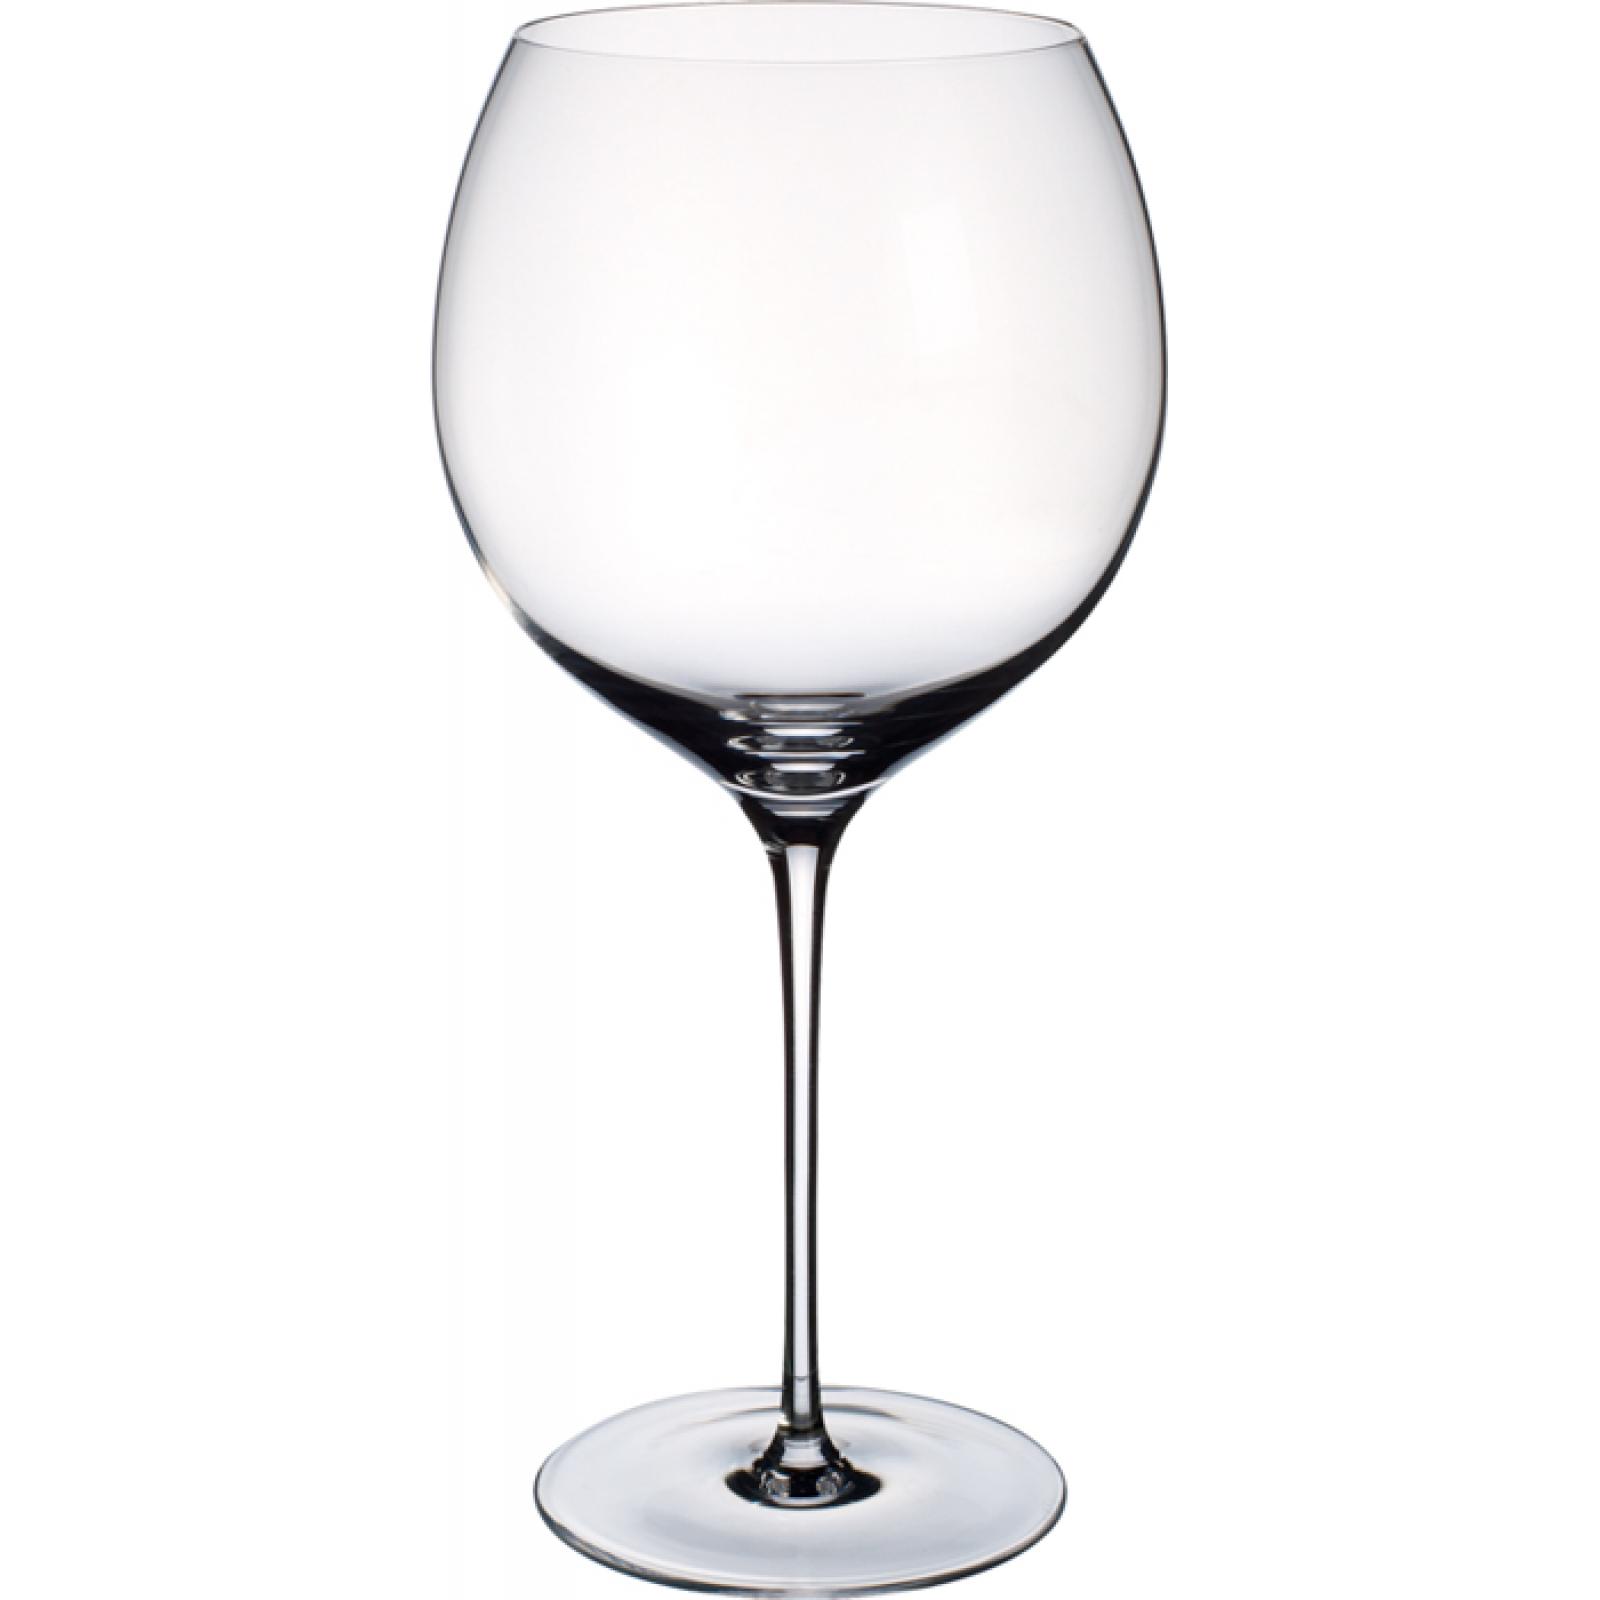 Transparente Cristal Villeroy & Boch Allegorie Premium Copa de vino tinto Burdeos Reserva 1,02 l 